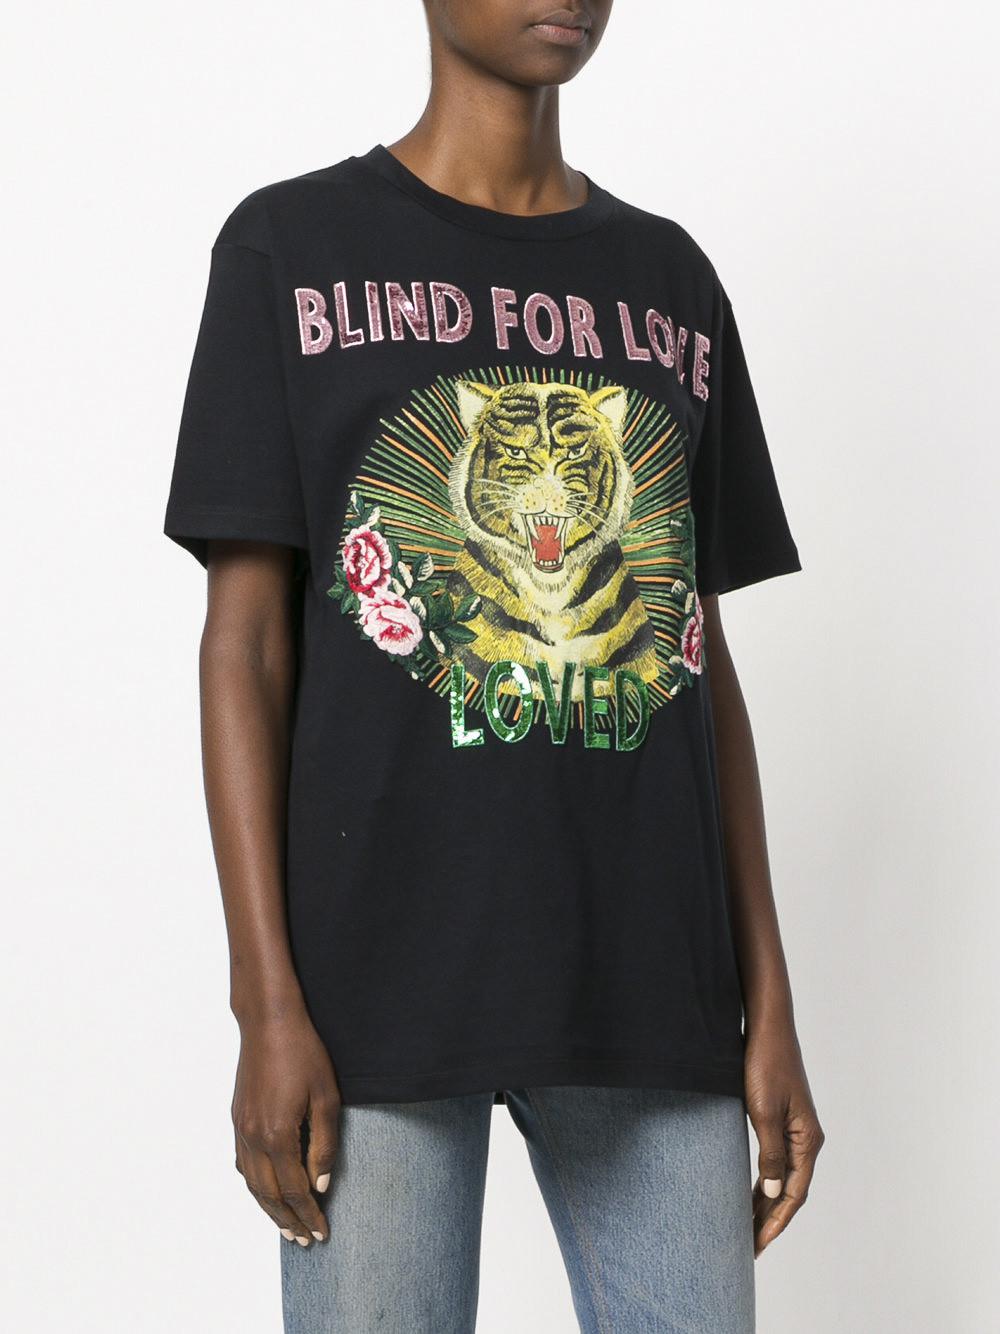 blind for love t shirt